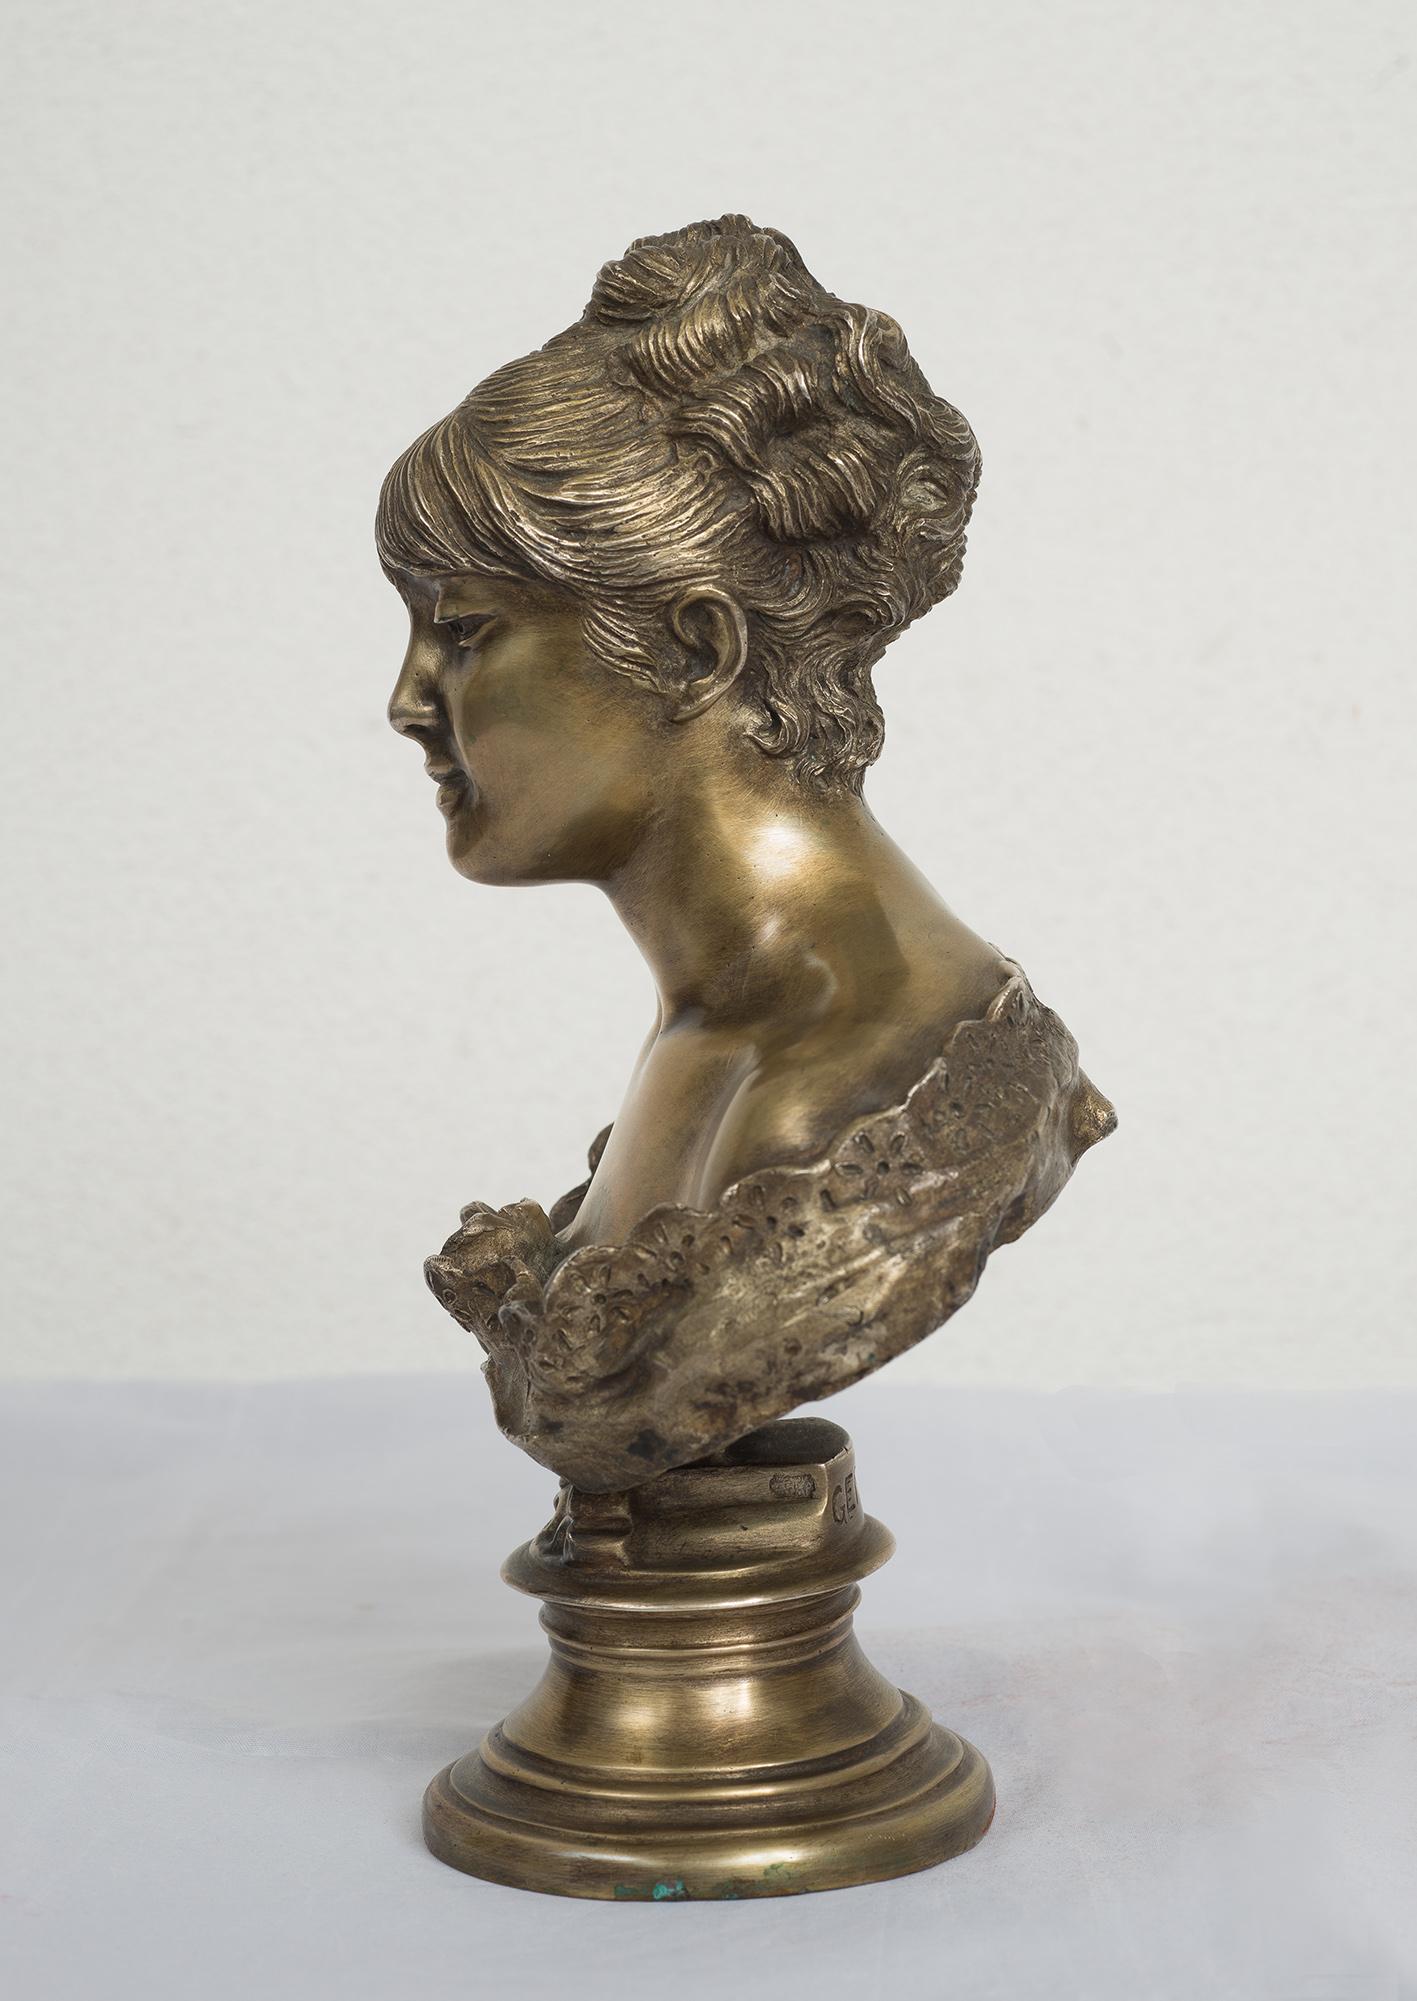 Paar fein gearbeitete Skulpturen aus massivem Silber, signiert Gemito mit Chiurazzis Galeriestempel.

Die Frau ist in halber Körpergröße dargestellt, trägt zeitgenössische Kleidung und ruht auf einem runden Sockel.

Der Mann ist mit nacktem